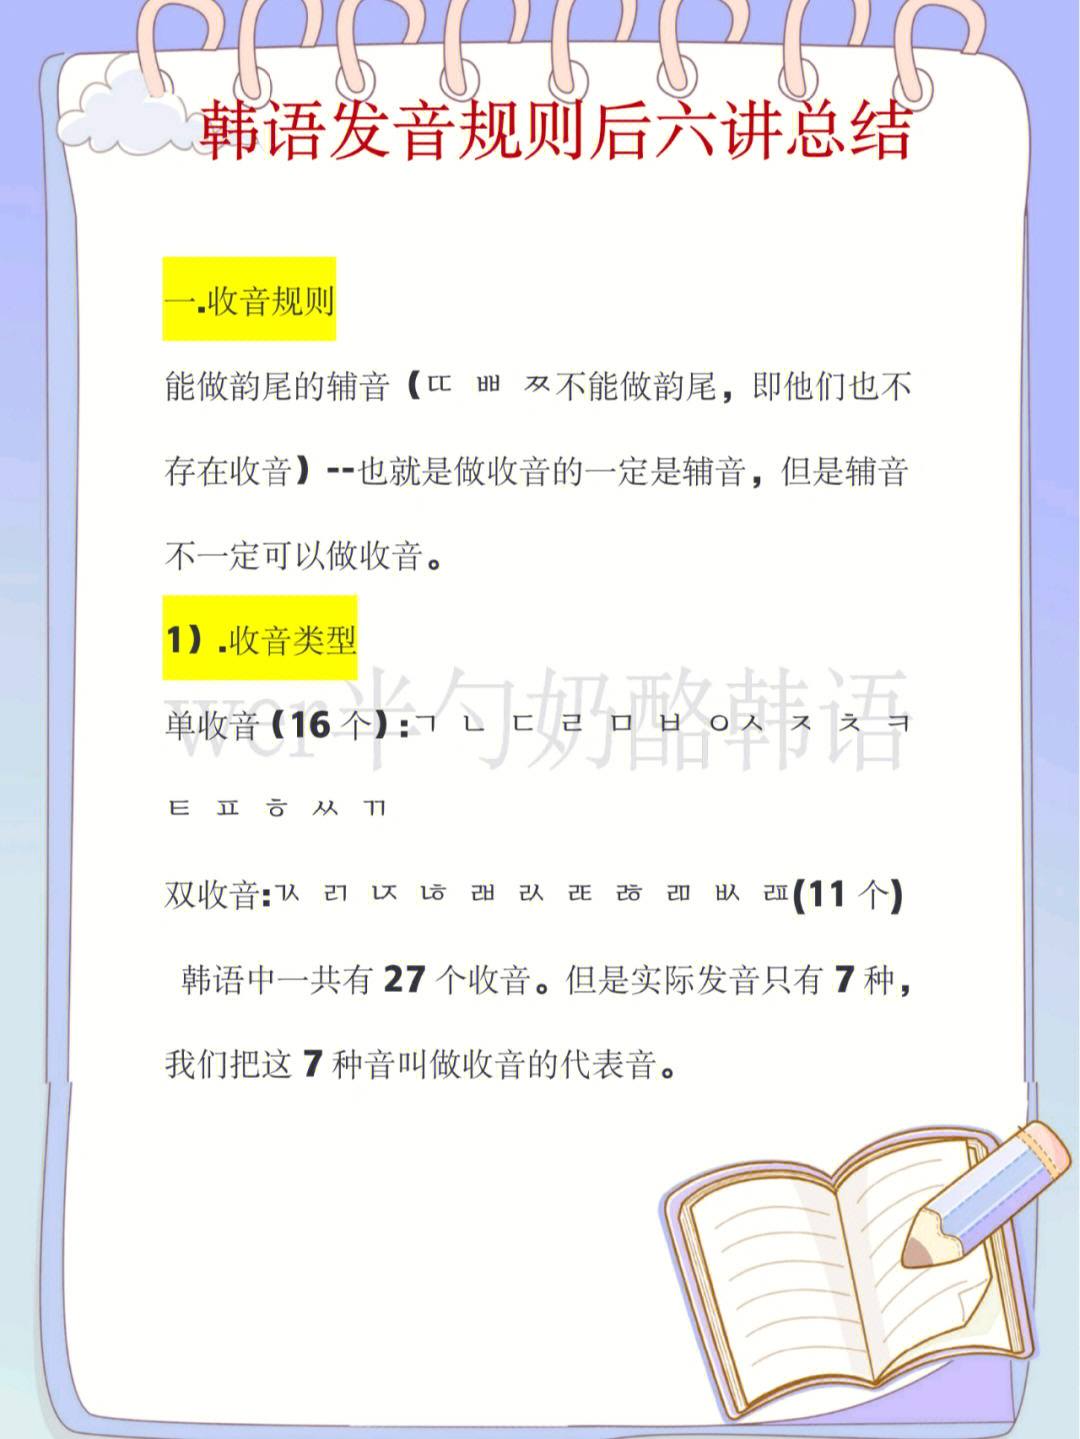 韩语发音规则73后六讲重点最全总结